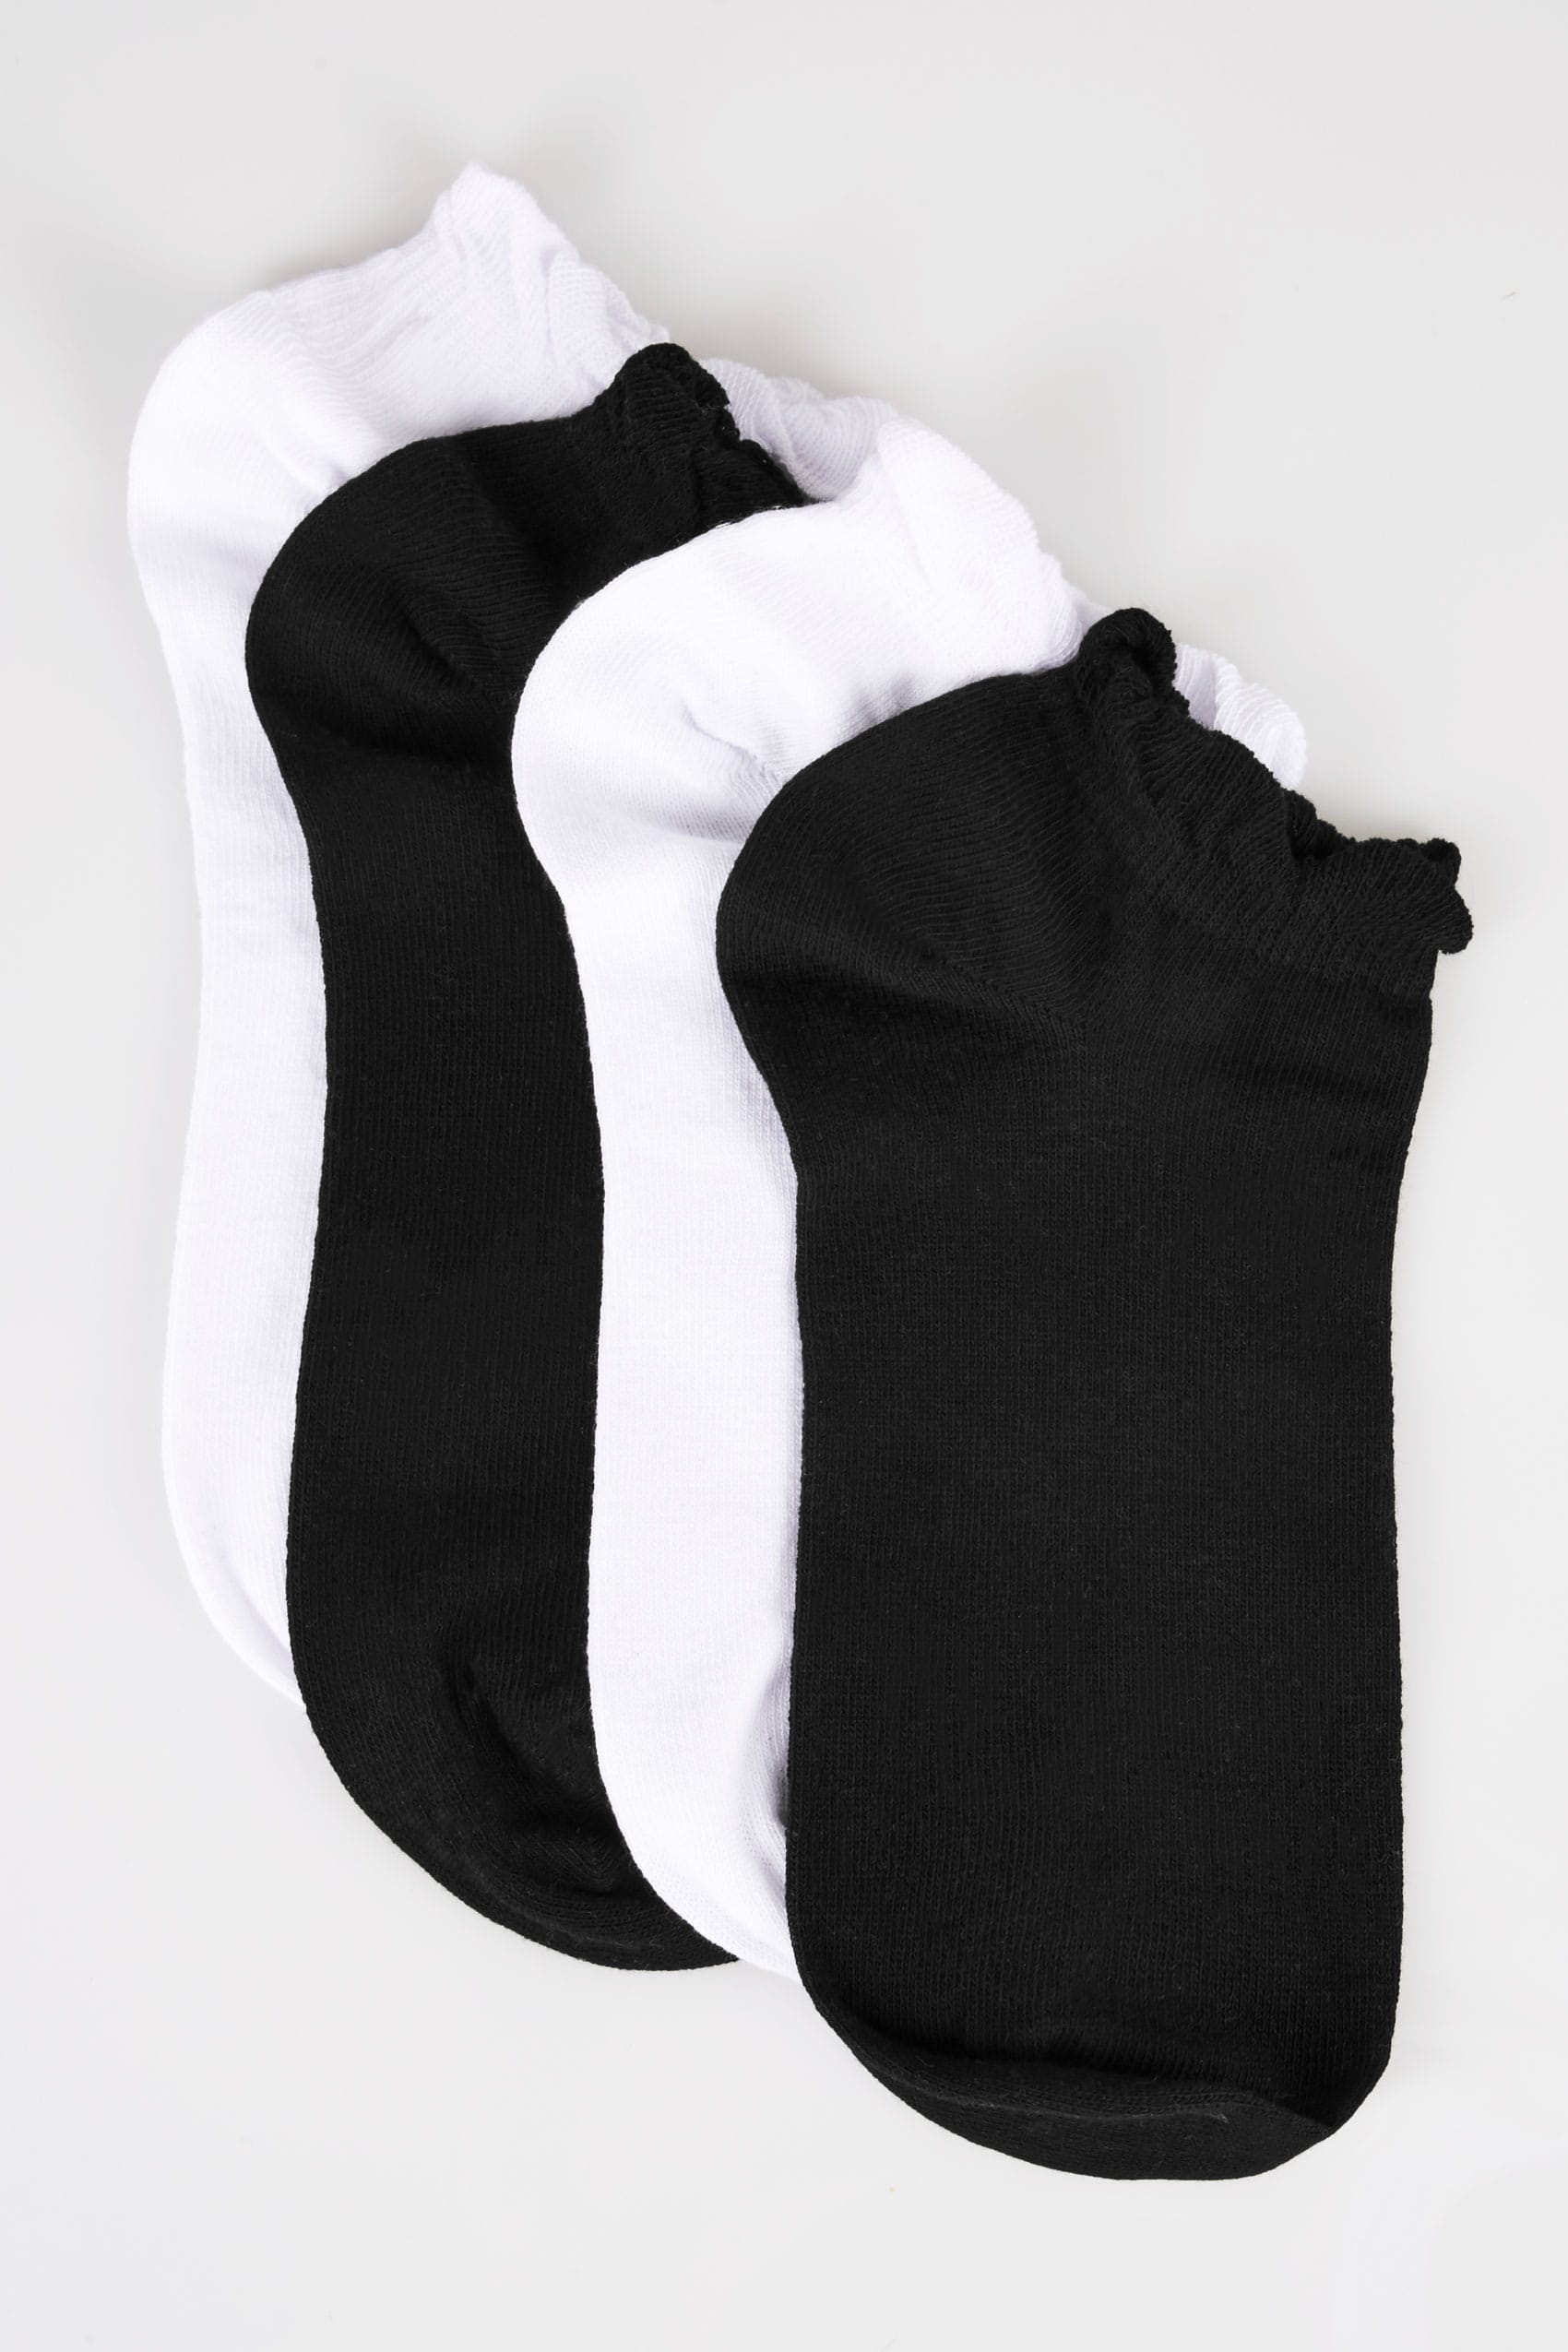 4 PACK Black & White Trainer Socks